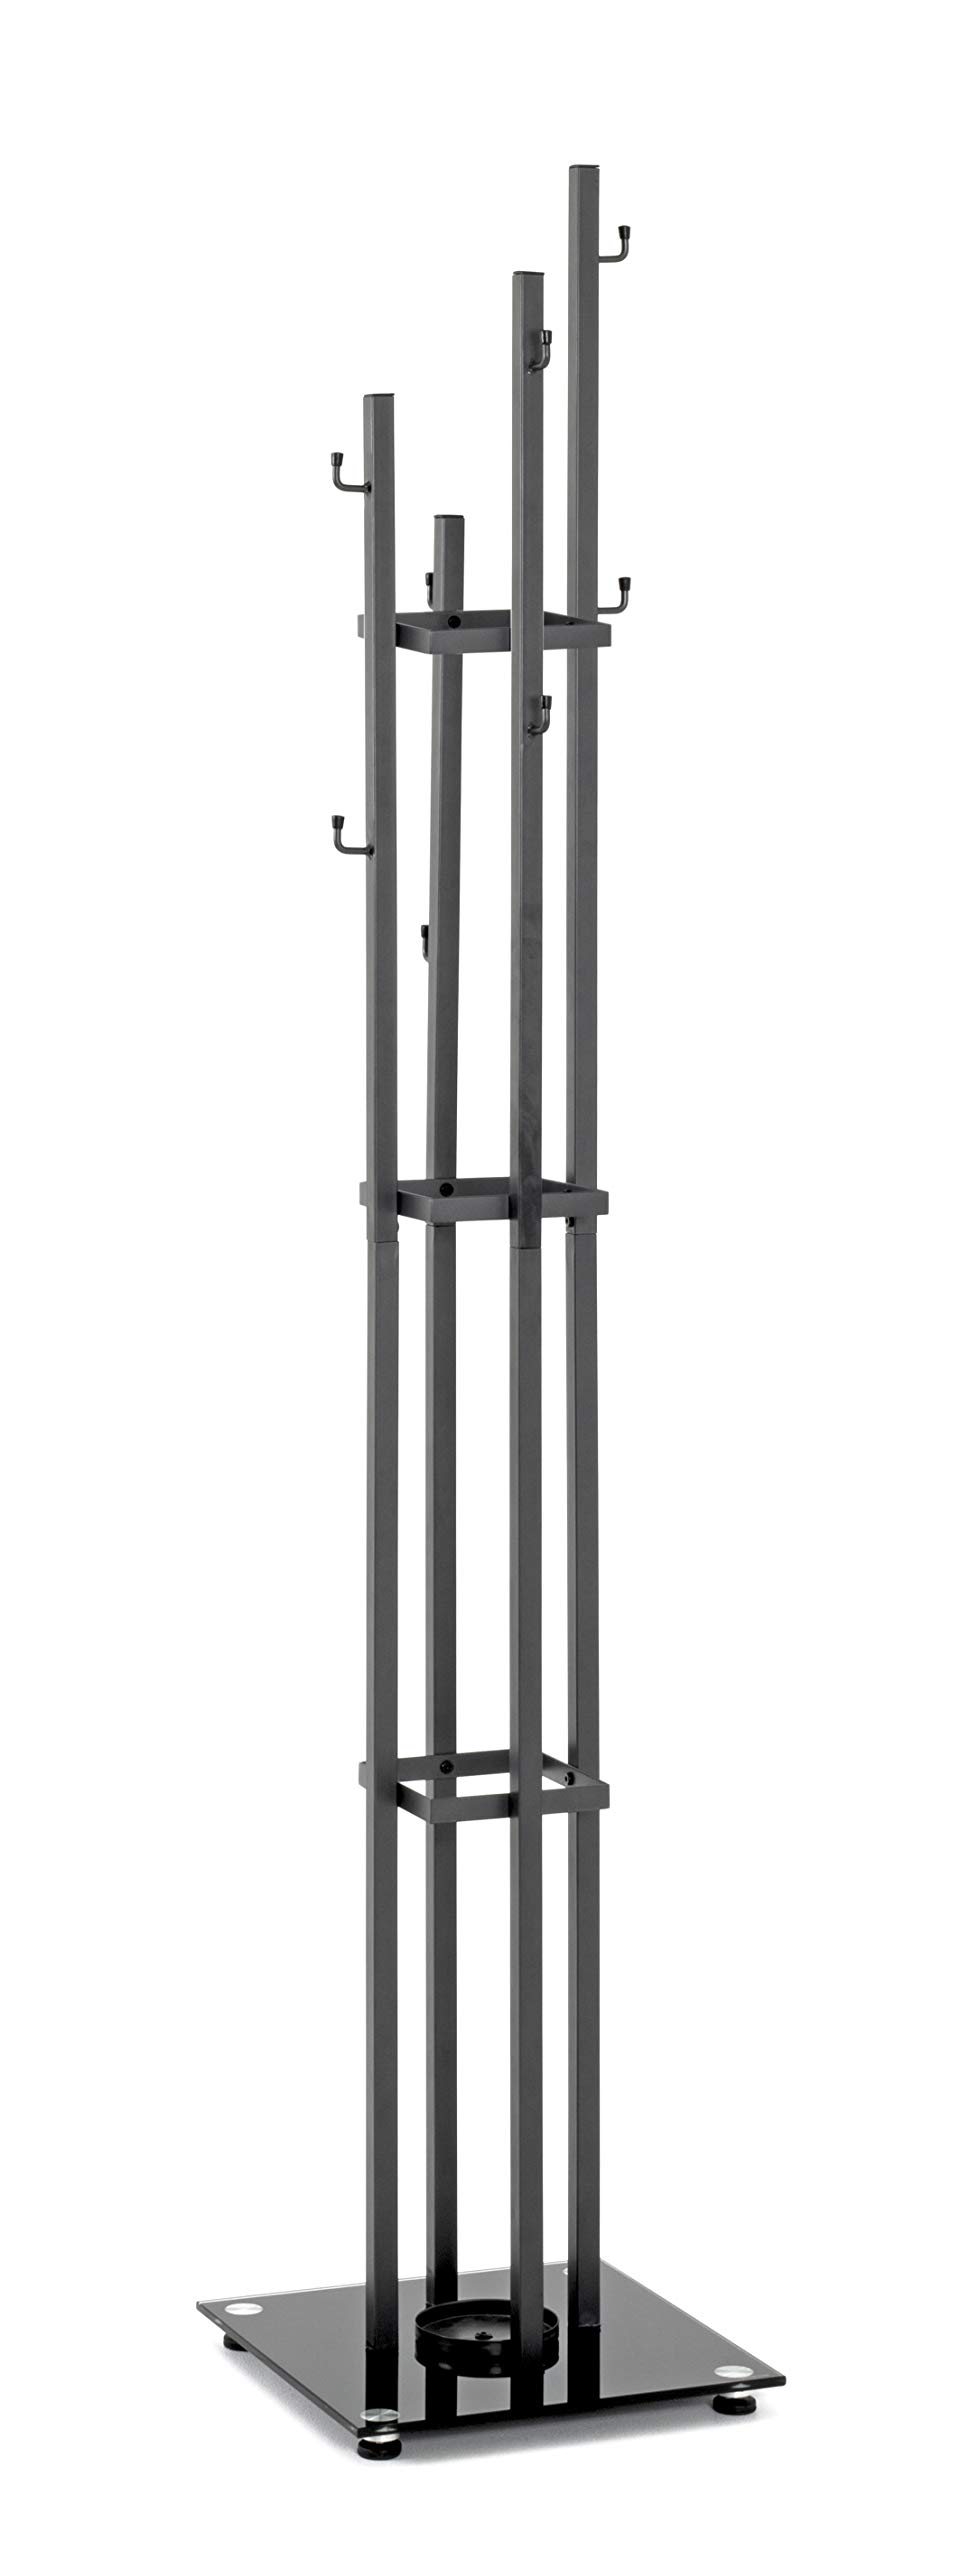 HAKU Möbel Garderobenständer, Metall, anthrazit-schwarz, B 35 x T 35 x H 183 cm